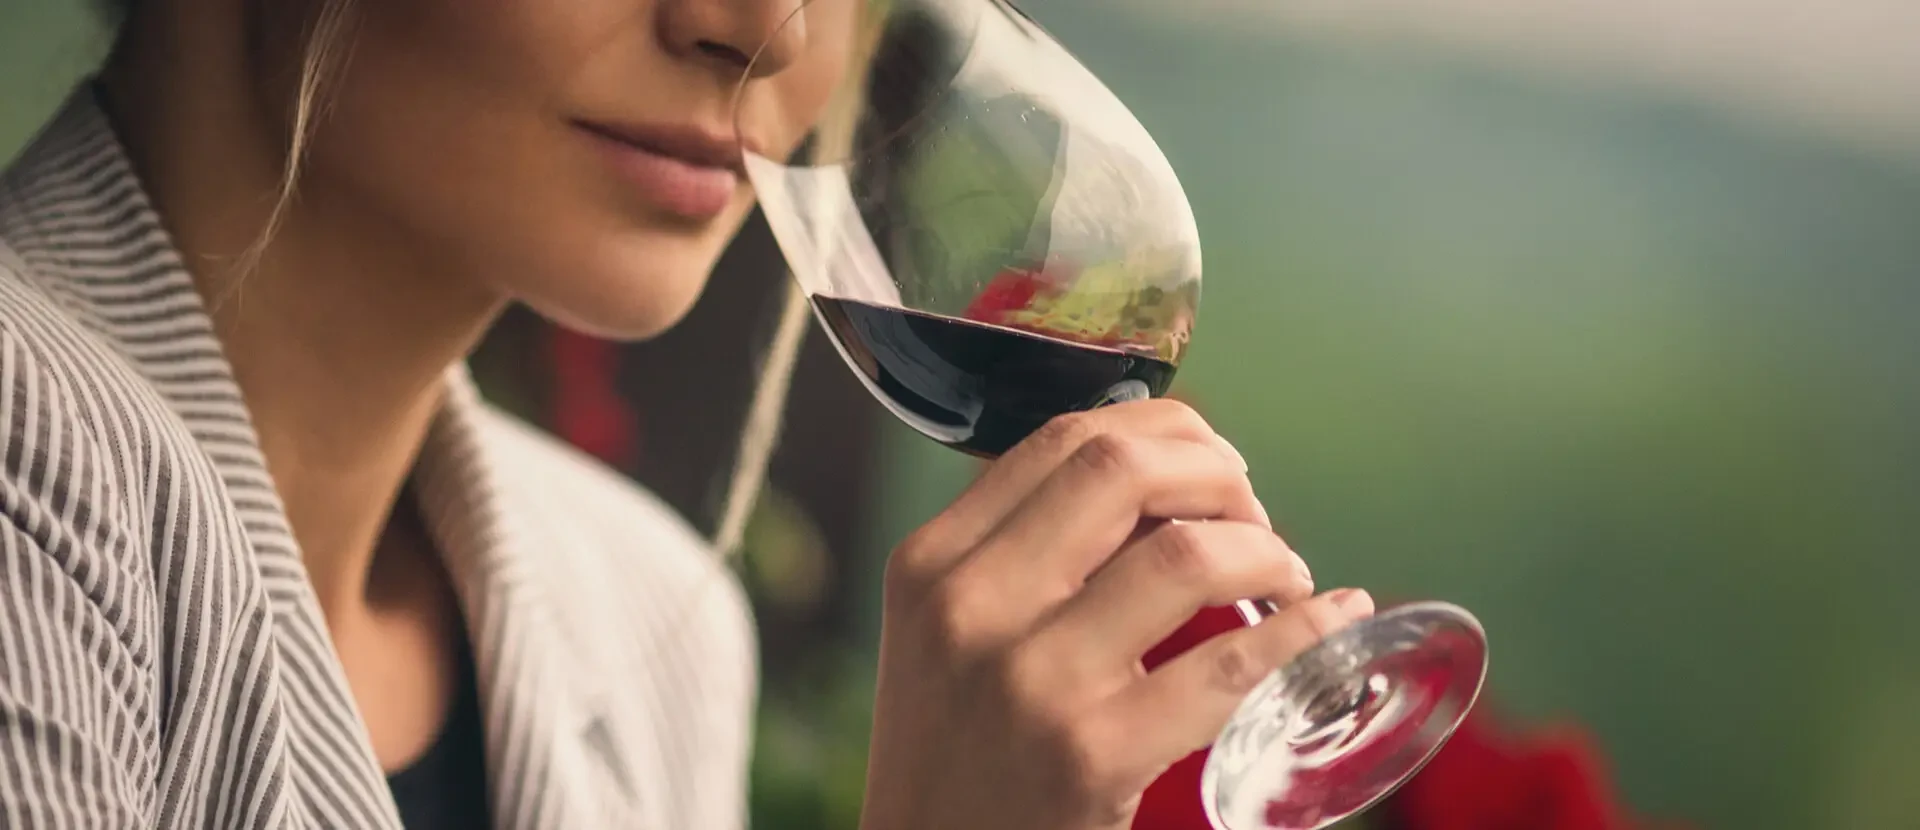 De kunst van het wijnproeven: wat is de beste manier om wijn te ervaren?